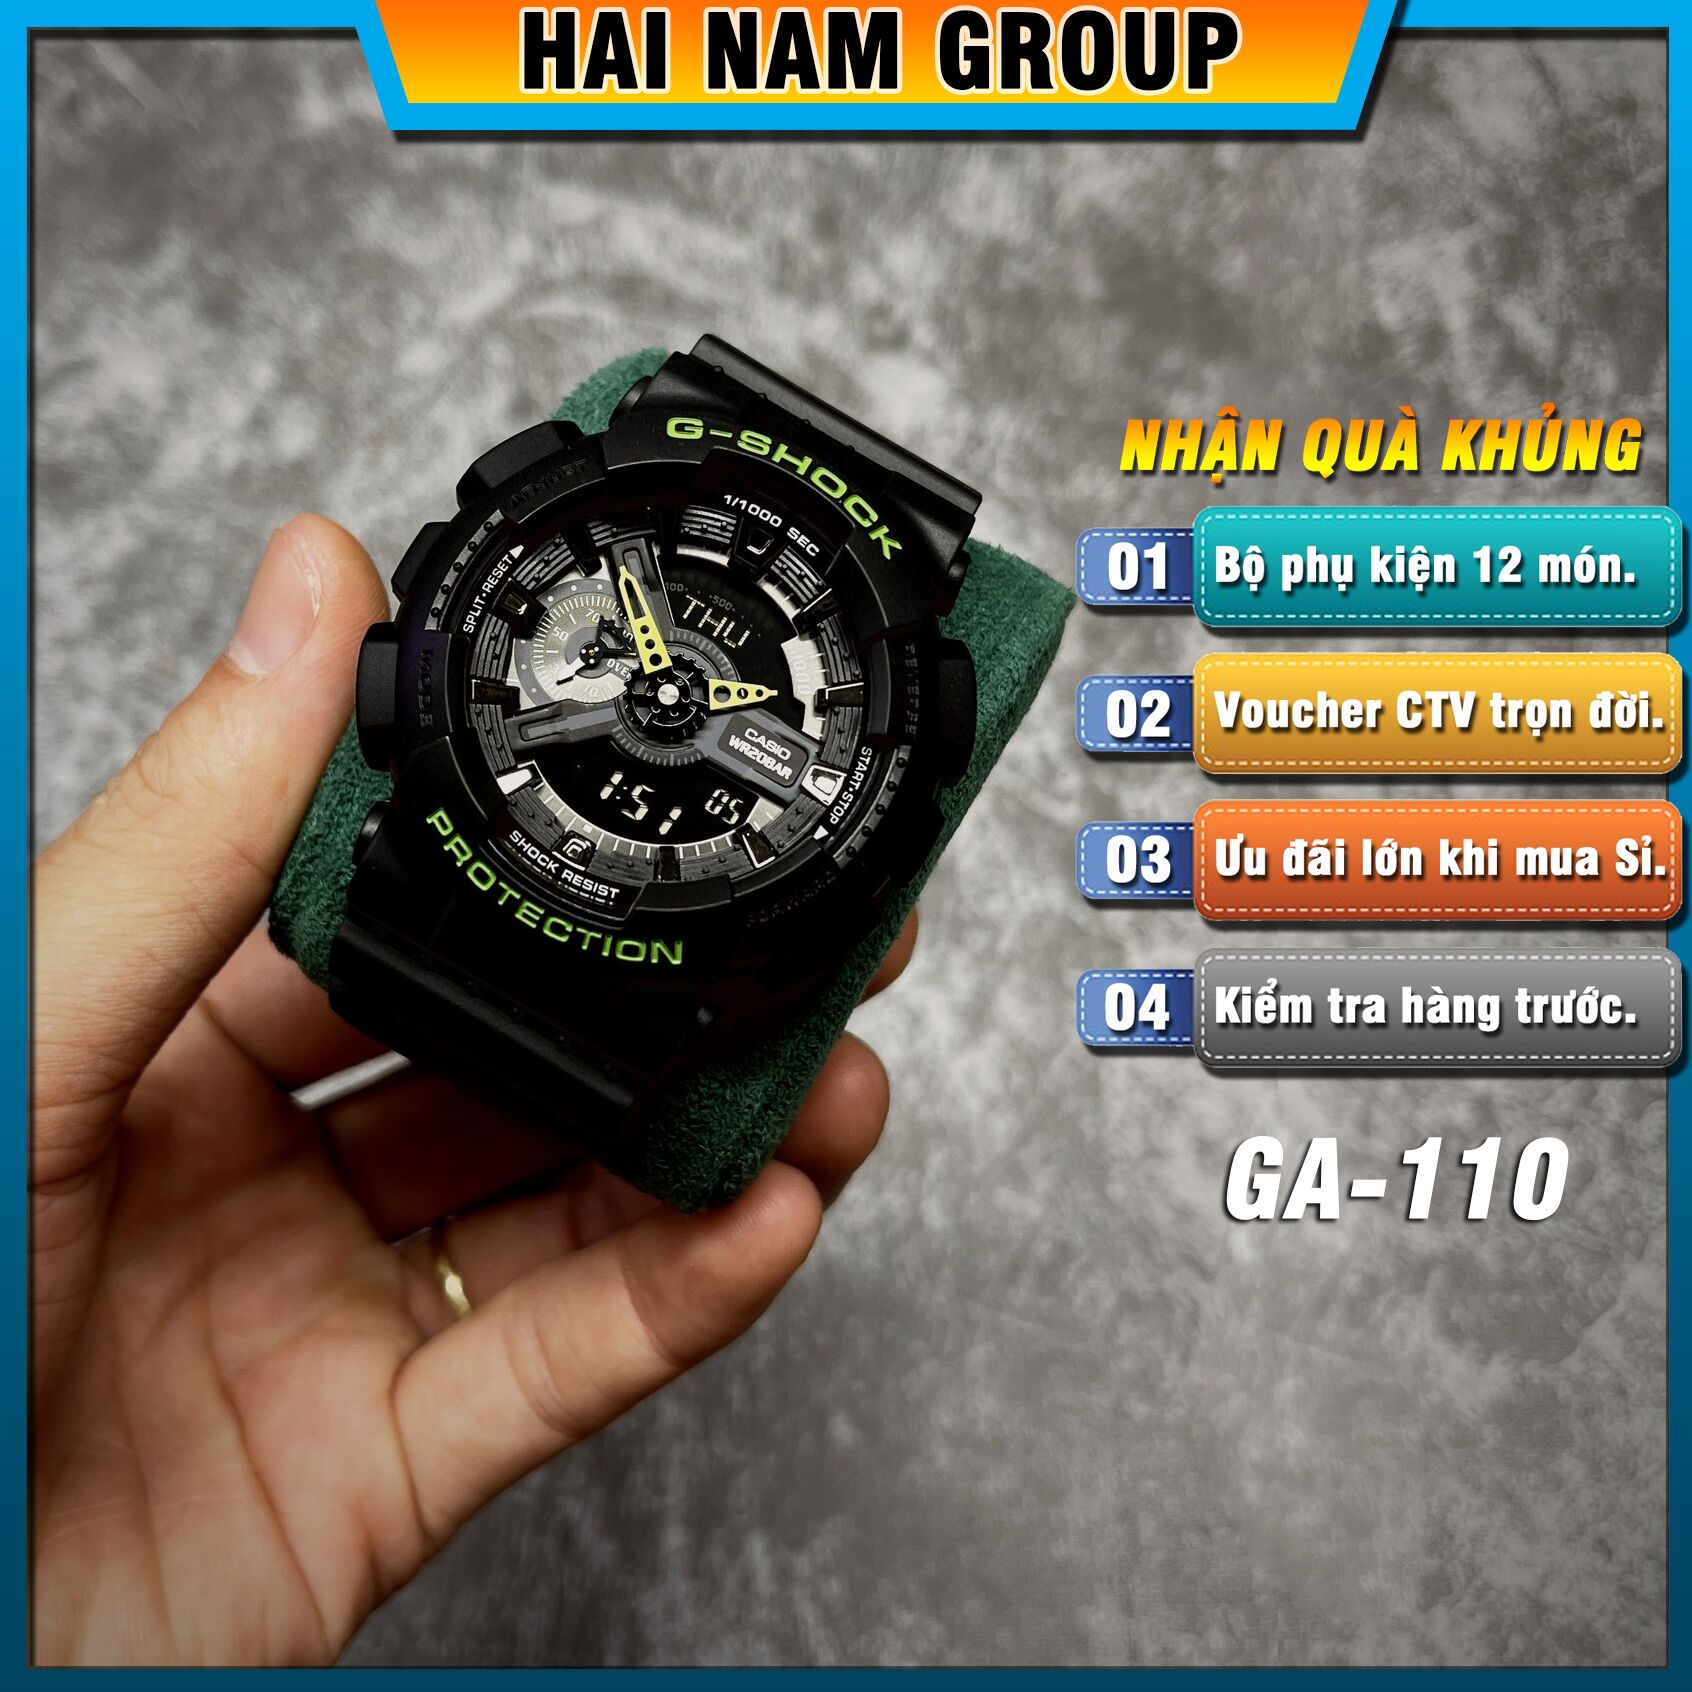 Đồng hồ nam nữ G-SHOCK GA-110LN-8A REP 1:1 Đen Xanh Lá Hai Màu tại Hải Nam Group 1